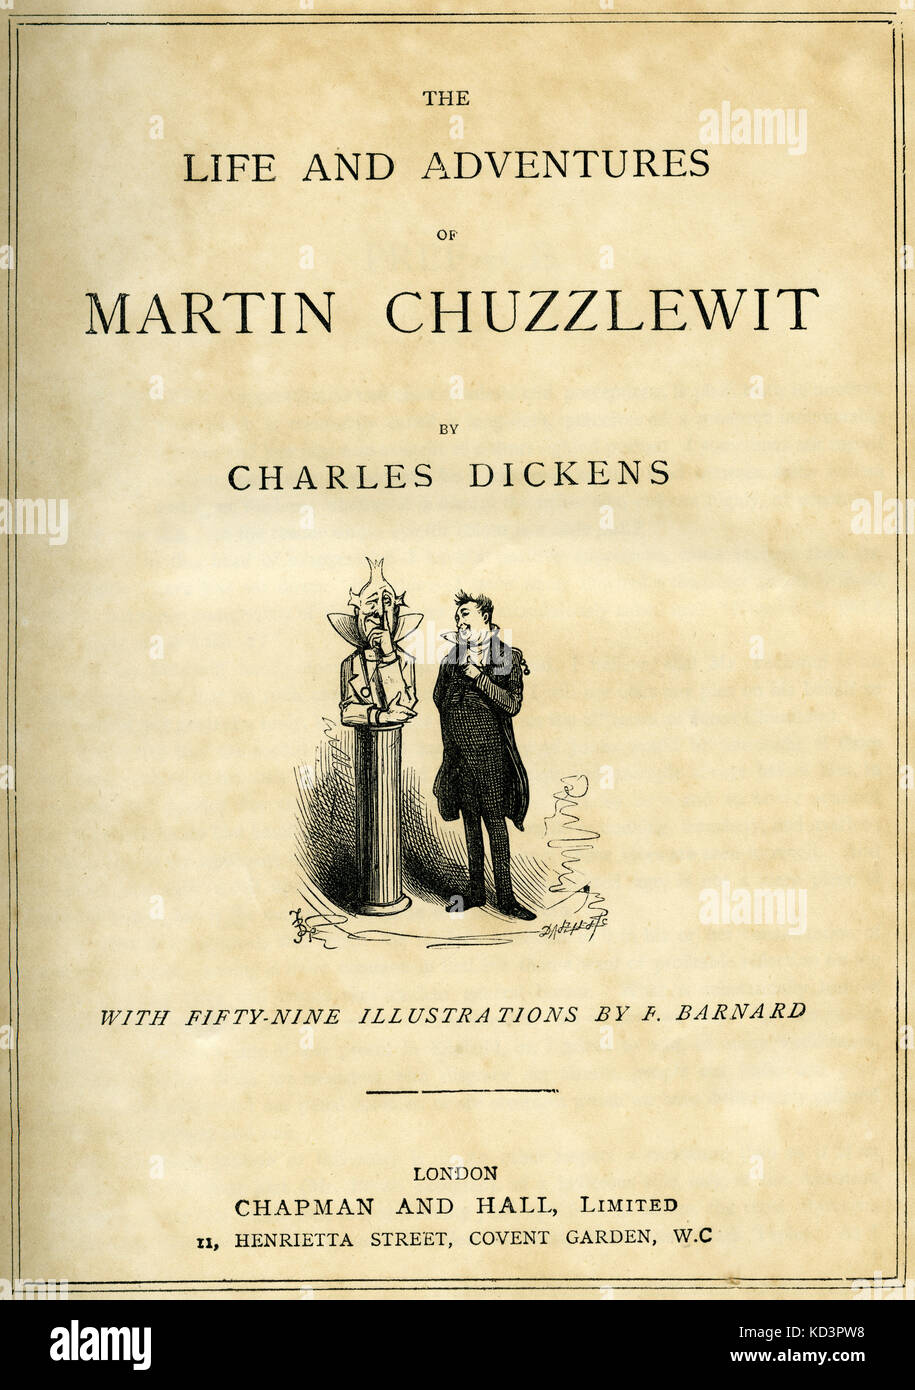 The Life & Adventures of Martin Chuzzlewitt di Charles Dickens pagina del titolo - romanziere inglese, 7 febbraio 1812 - 9 giugno 1870. Illustrazione di Frederick (Fred) Barnard . Londra . Chapman e Hall. Foto Stock